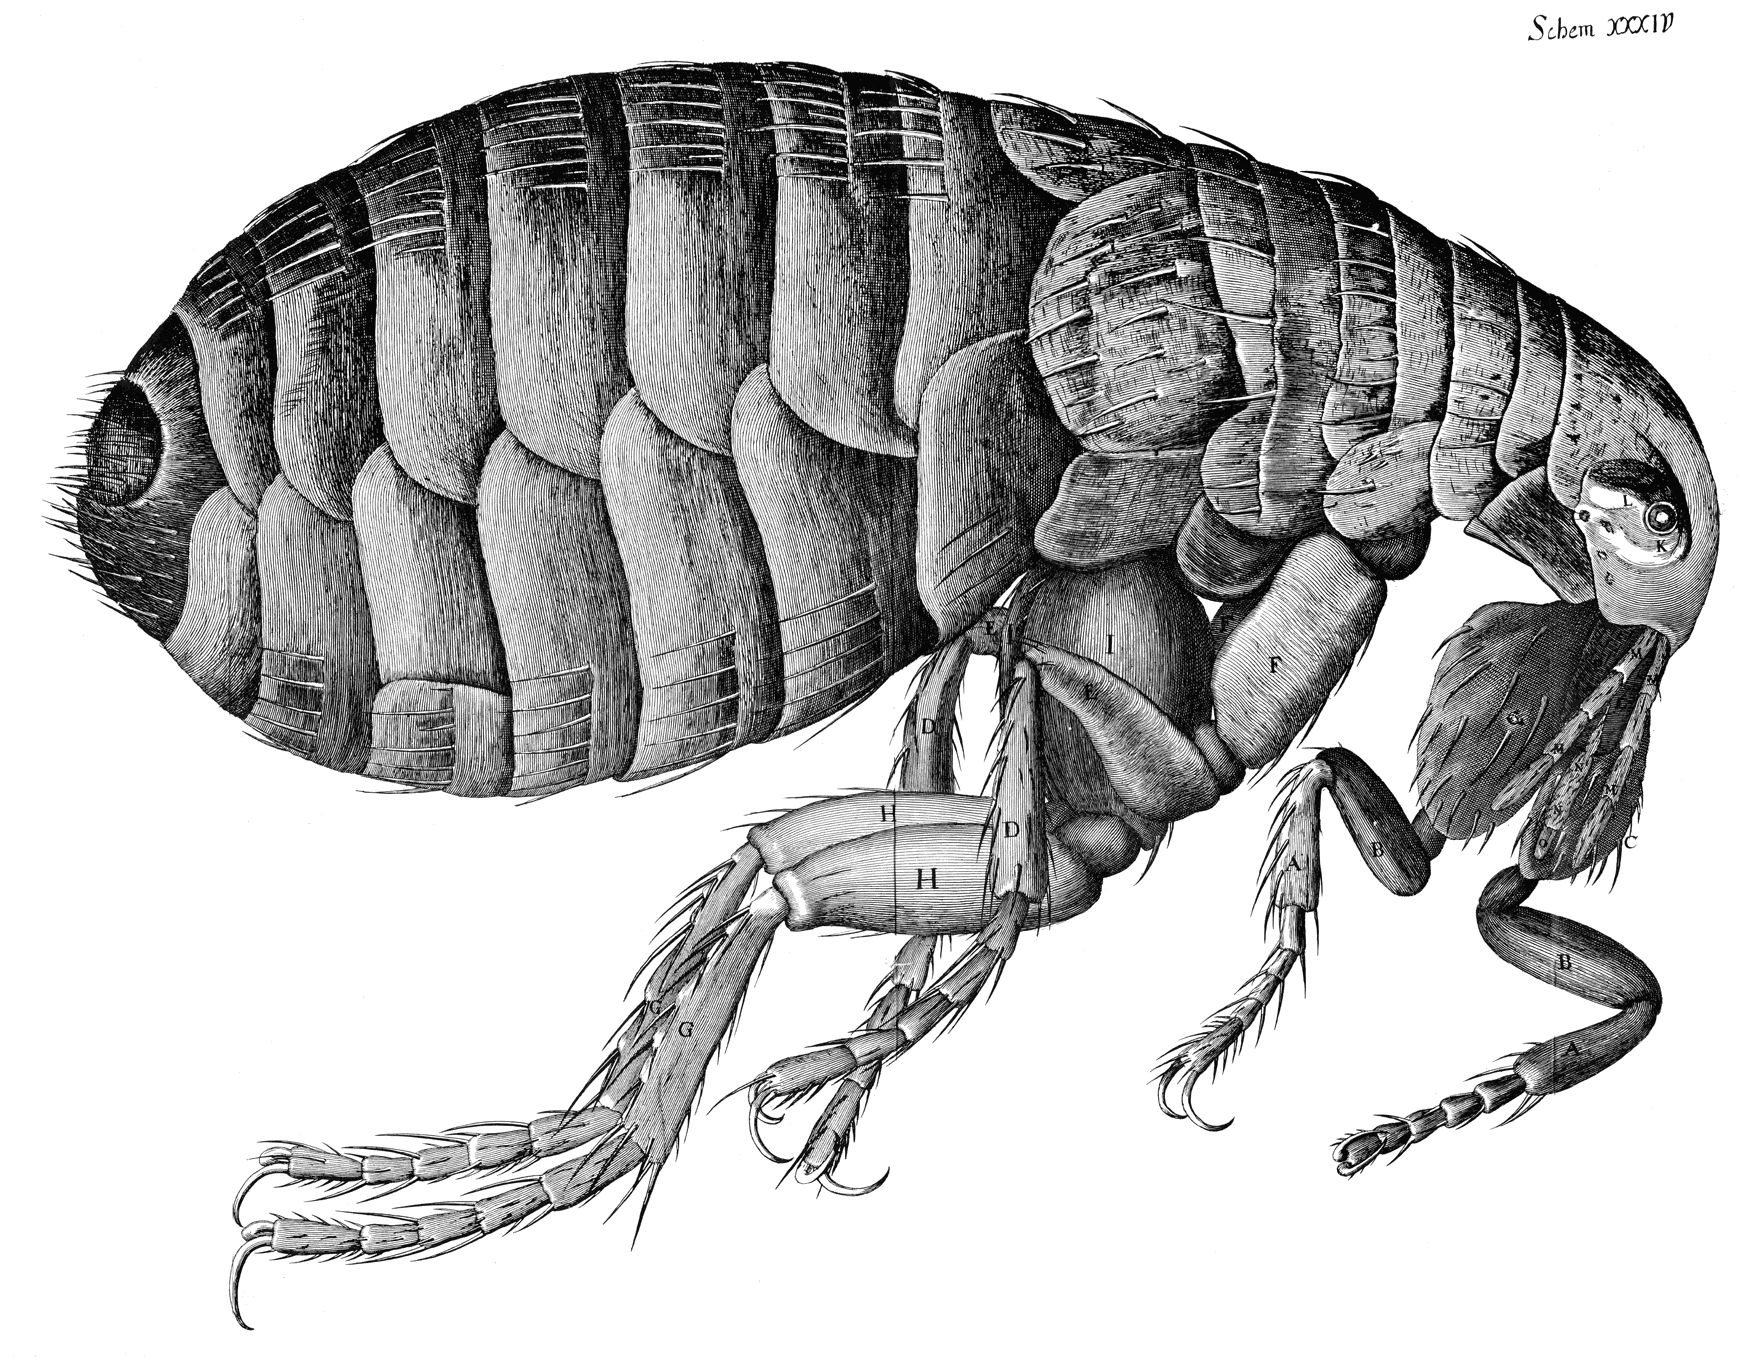 Hooke (1665), Micrographia